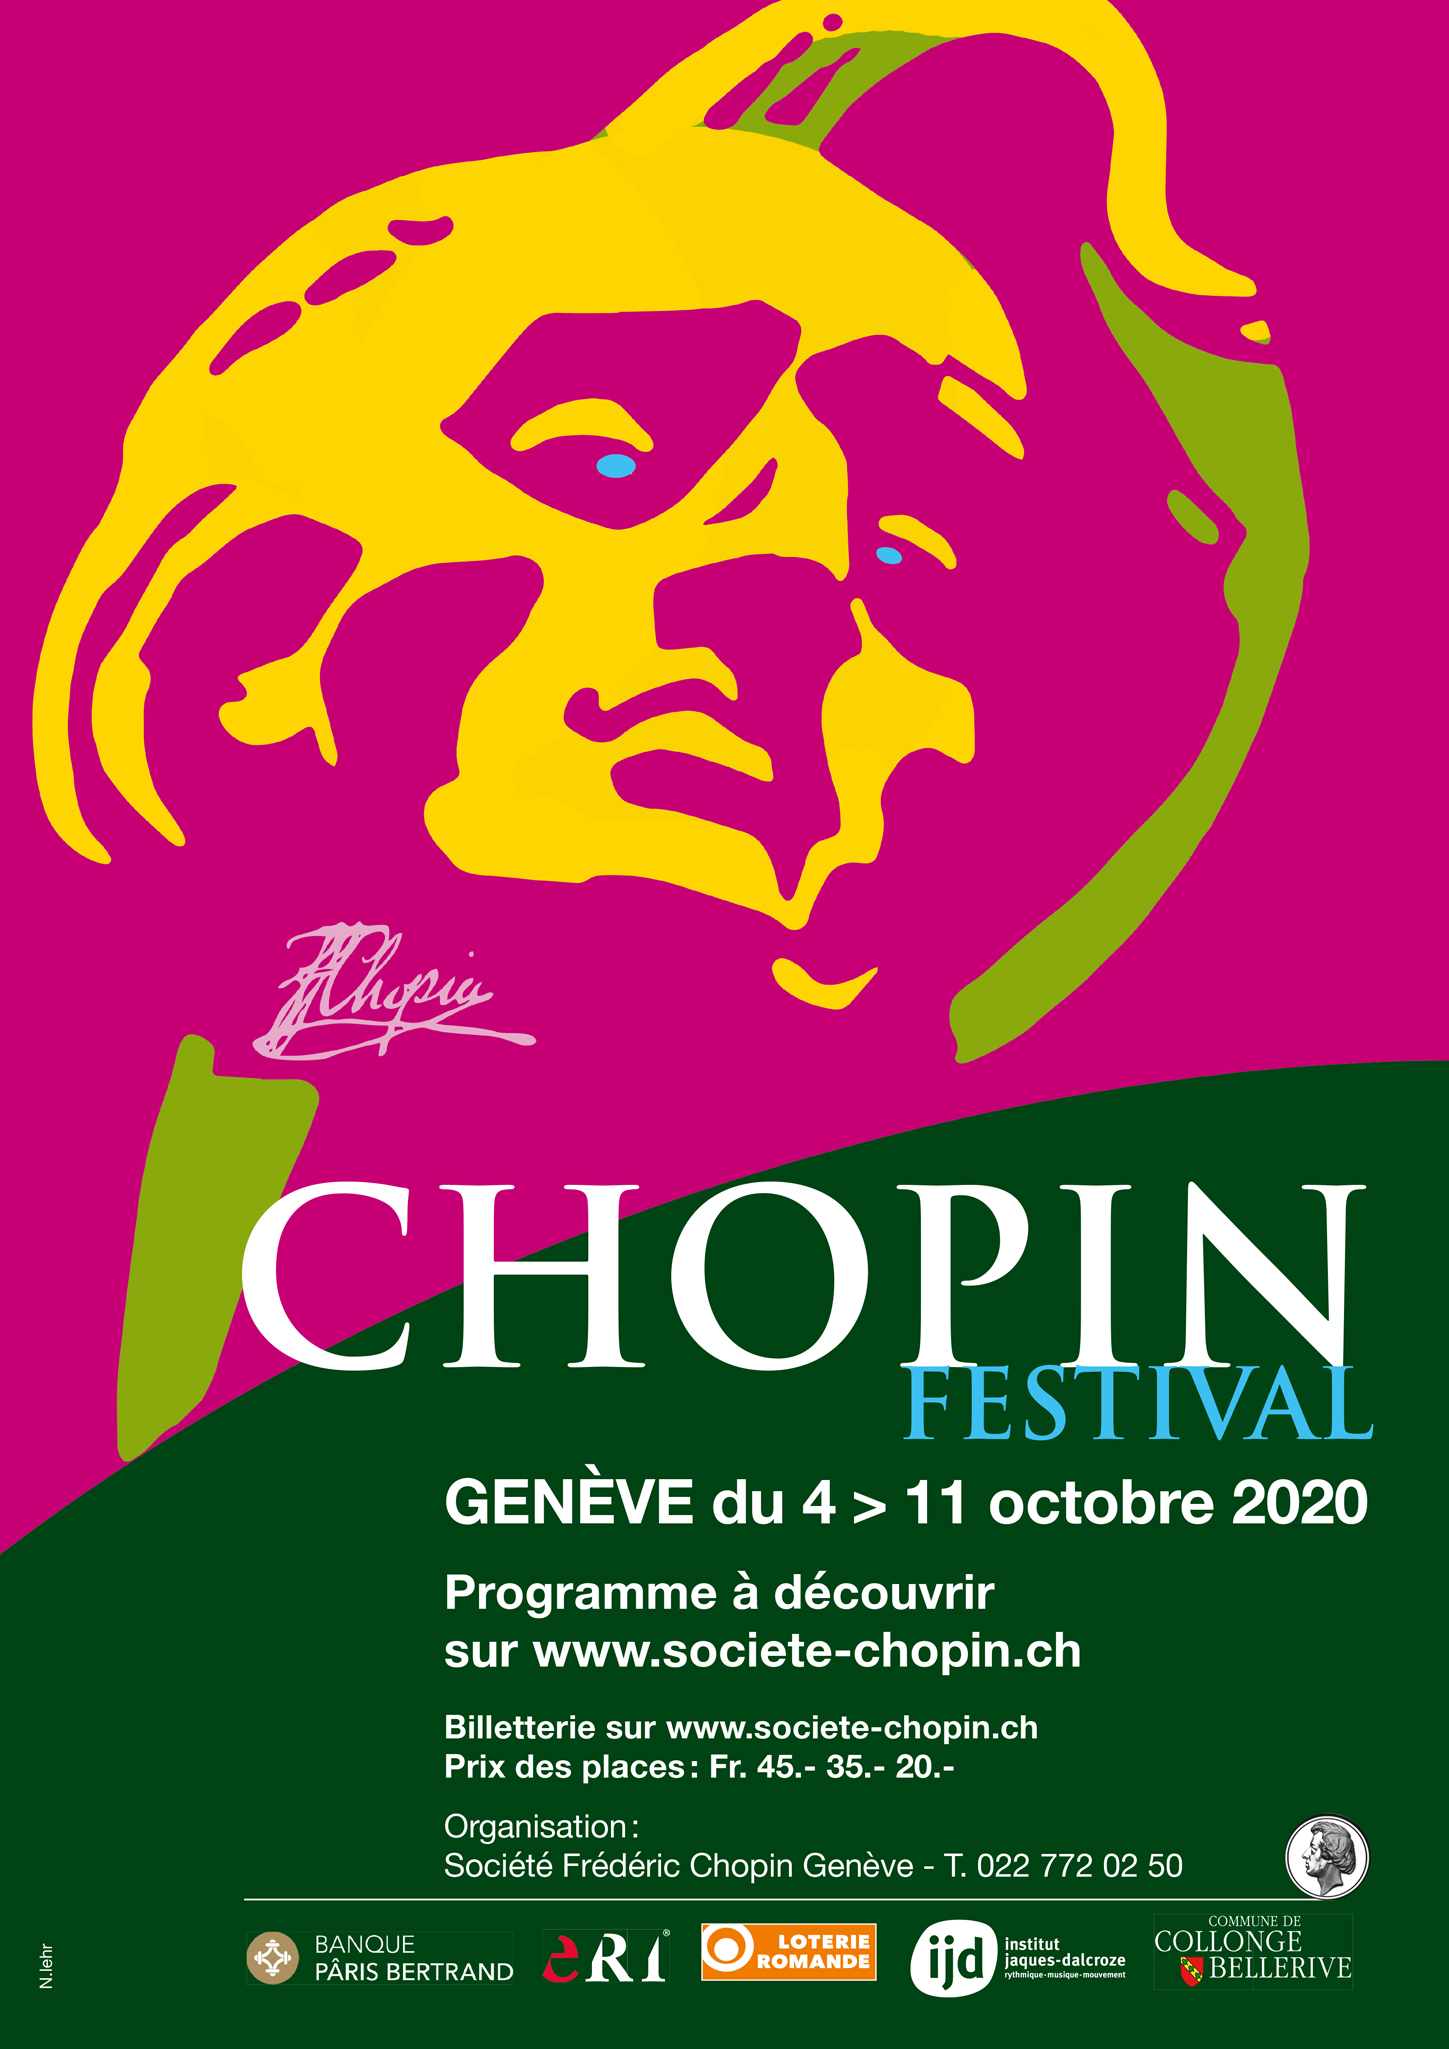 2020 Geneva Chopin Festival